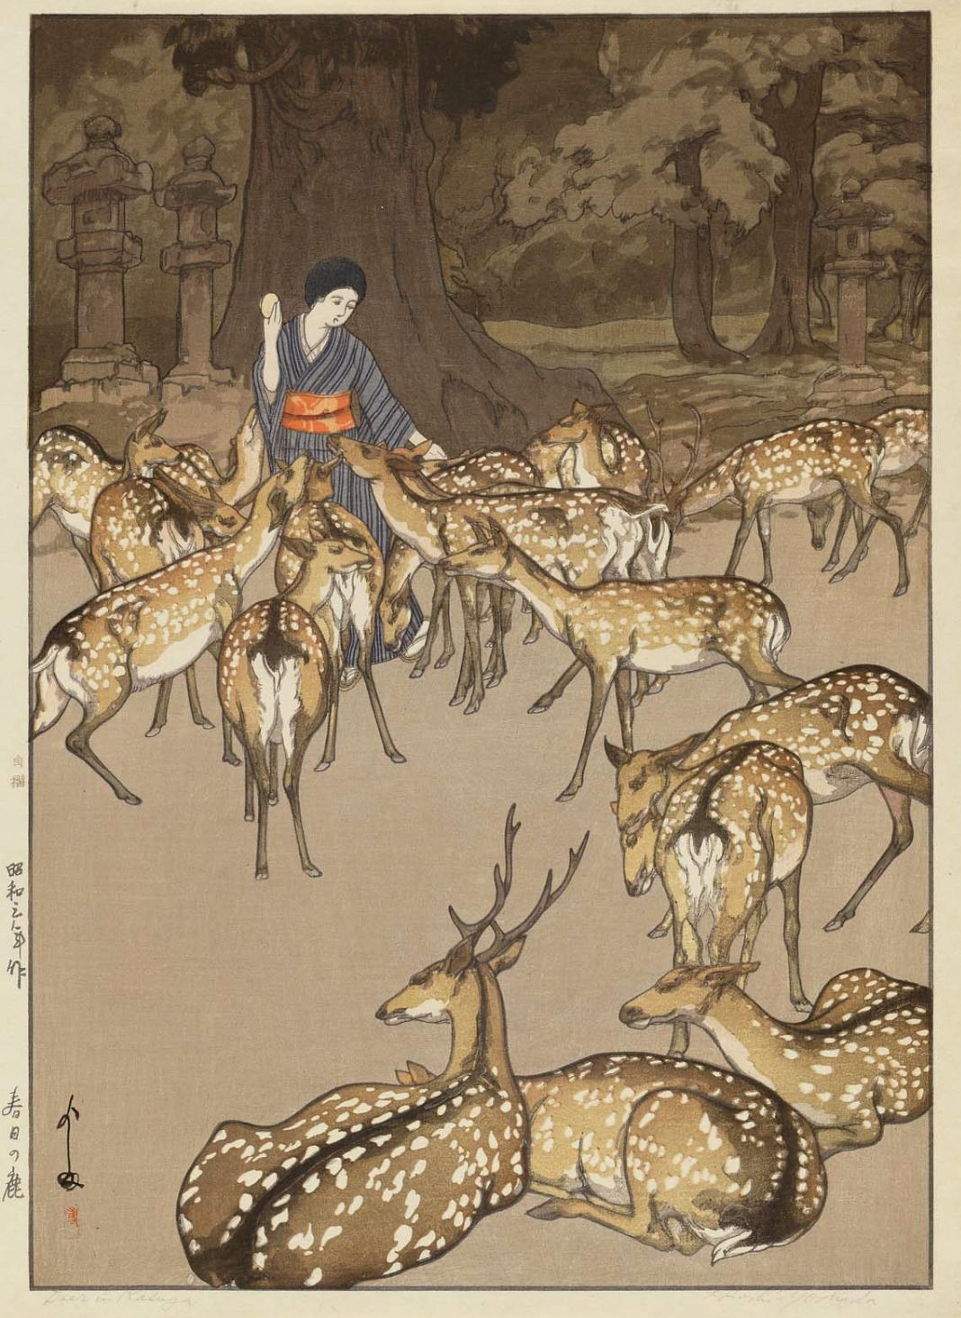 Hiroshi Yoshida “Deer in Kasuga” 1928 woodblock print